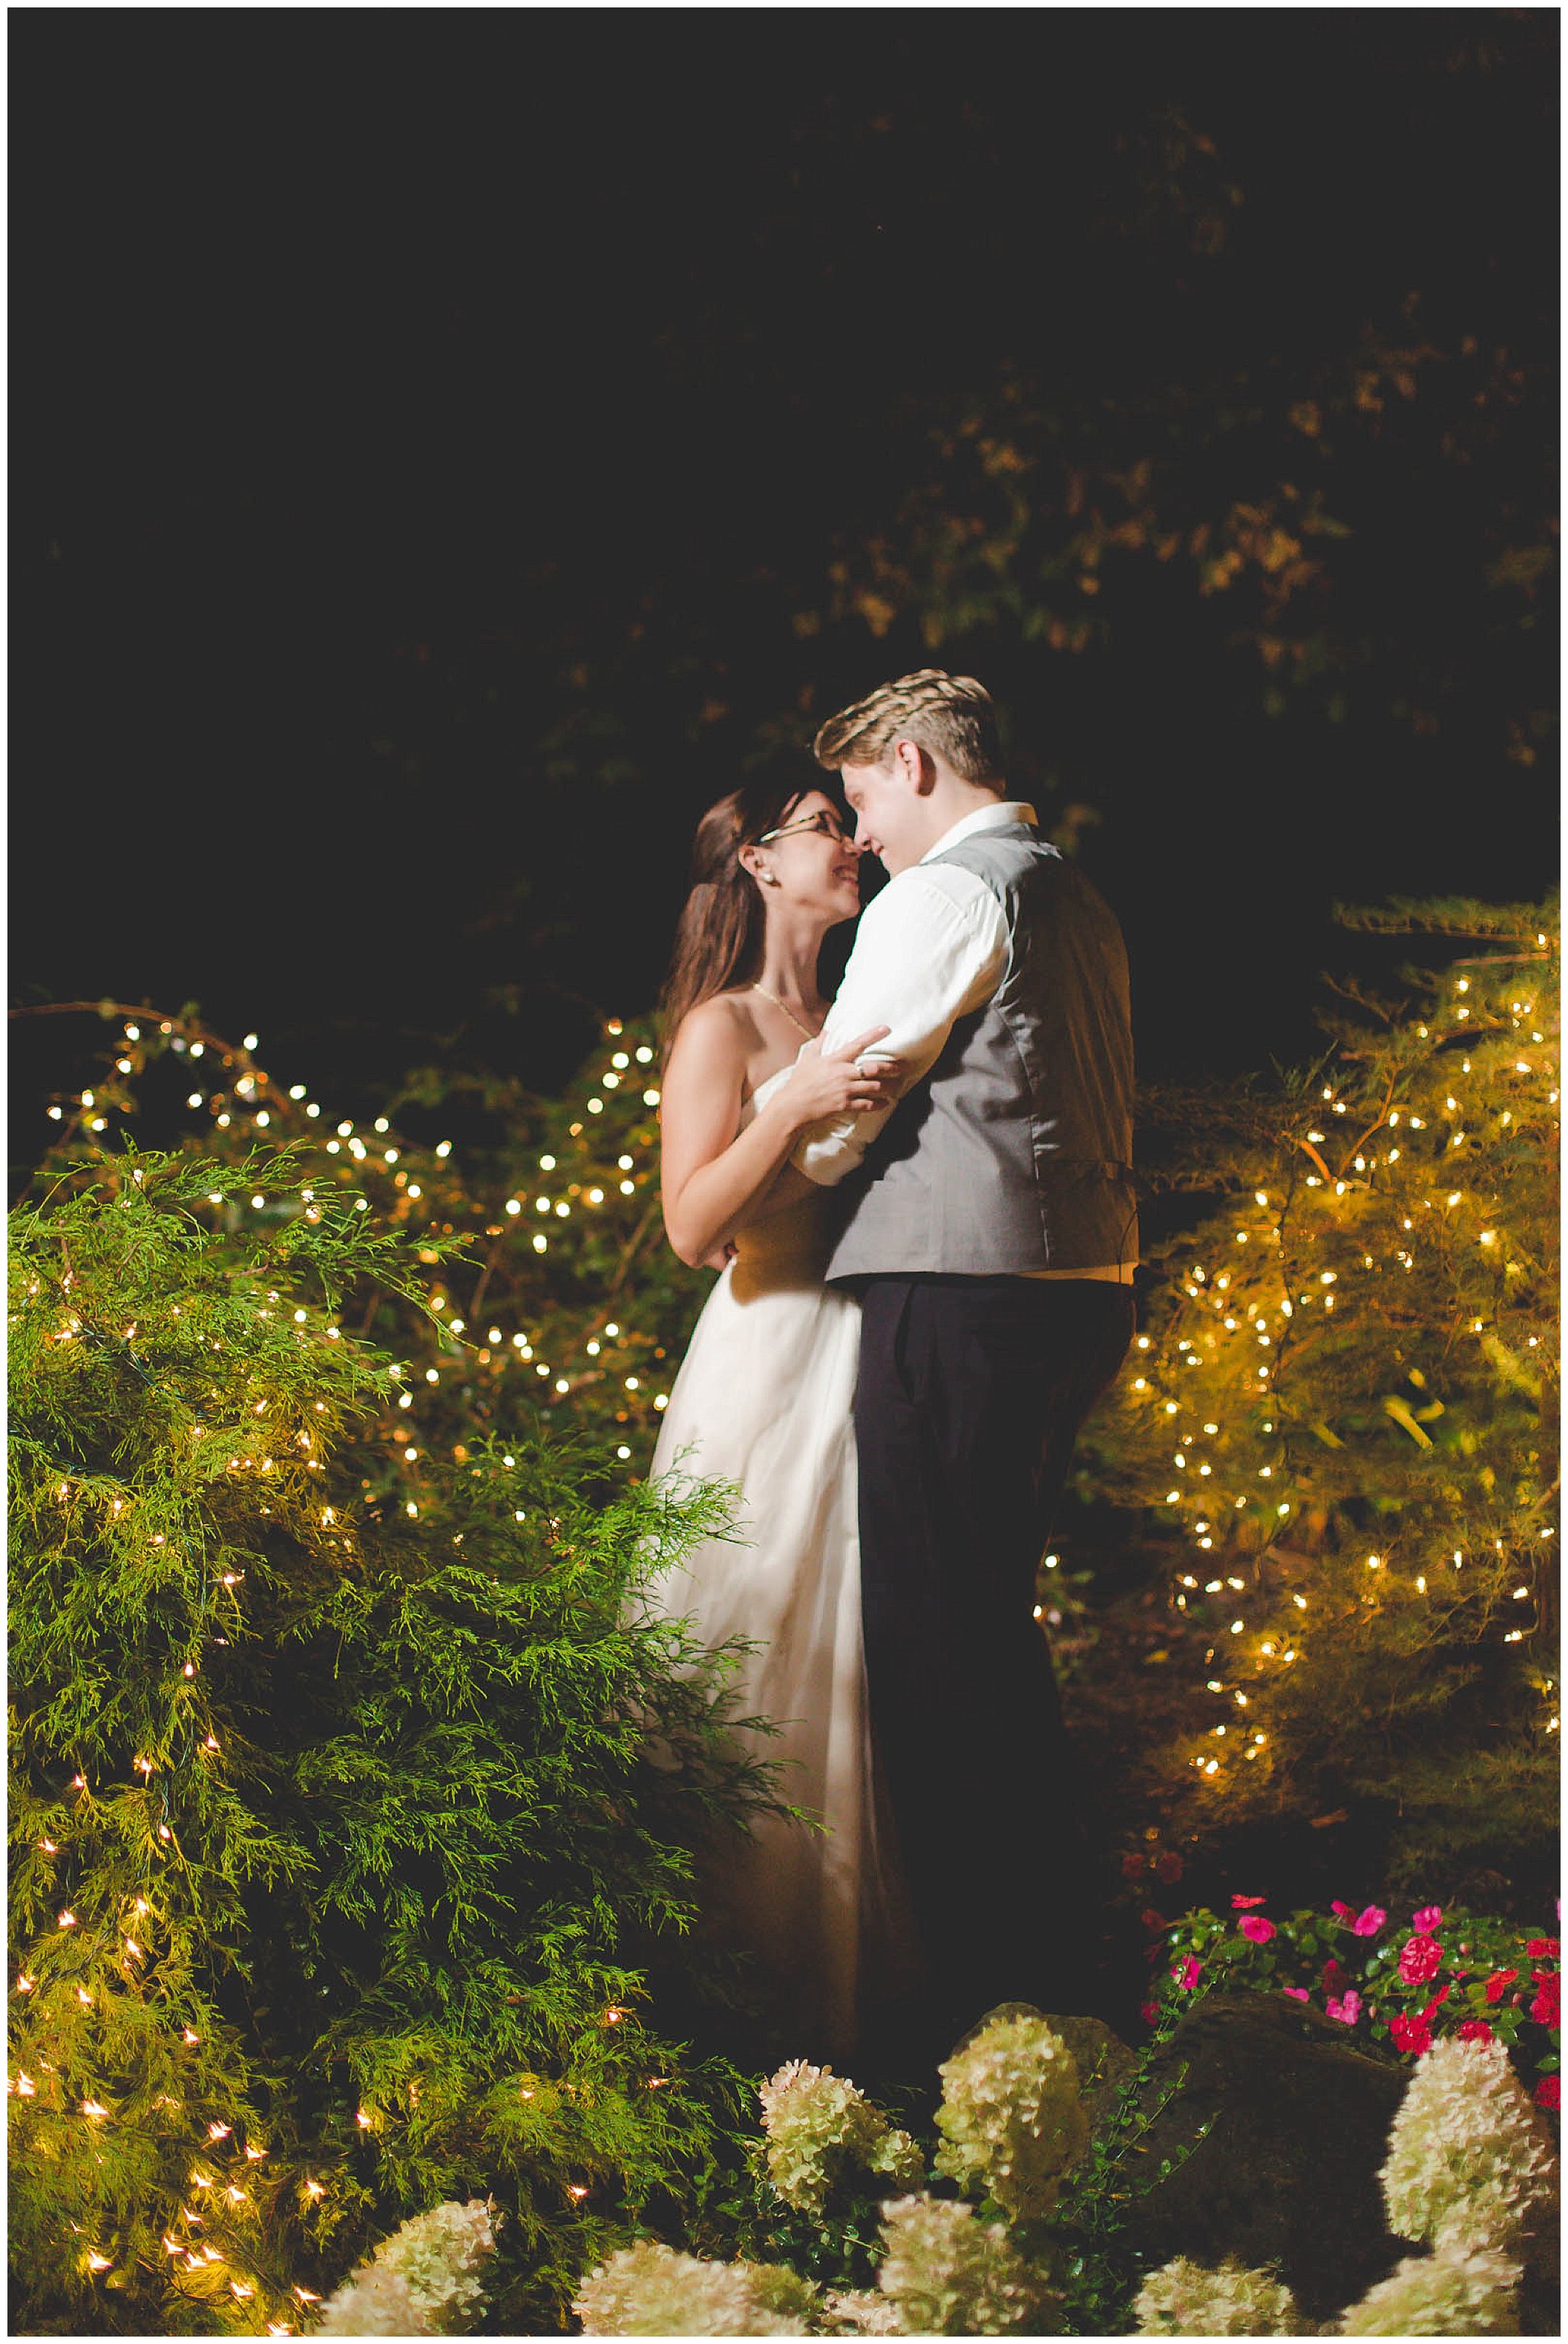 Stunning backyard wedding with twinkly lights, Fort Wayne Indiana Wedding Photographer_0024.jpg